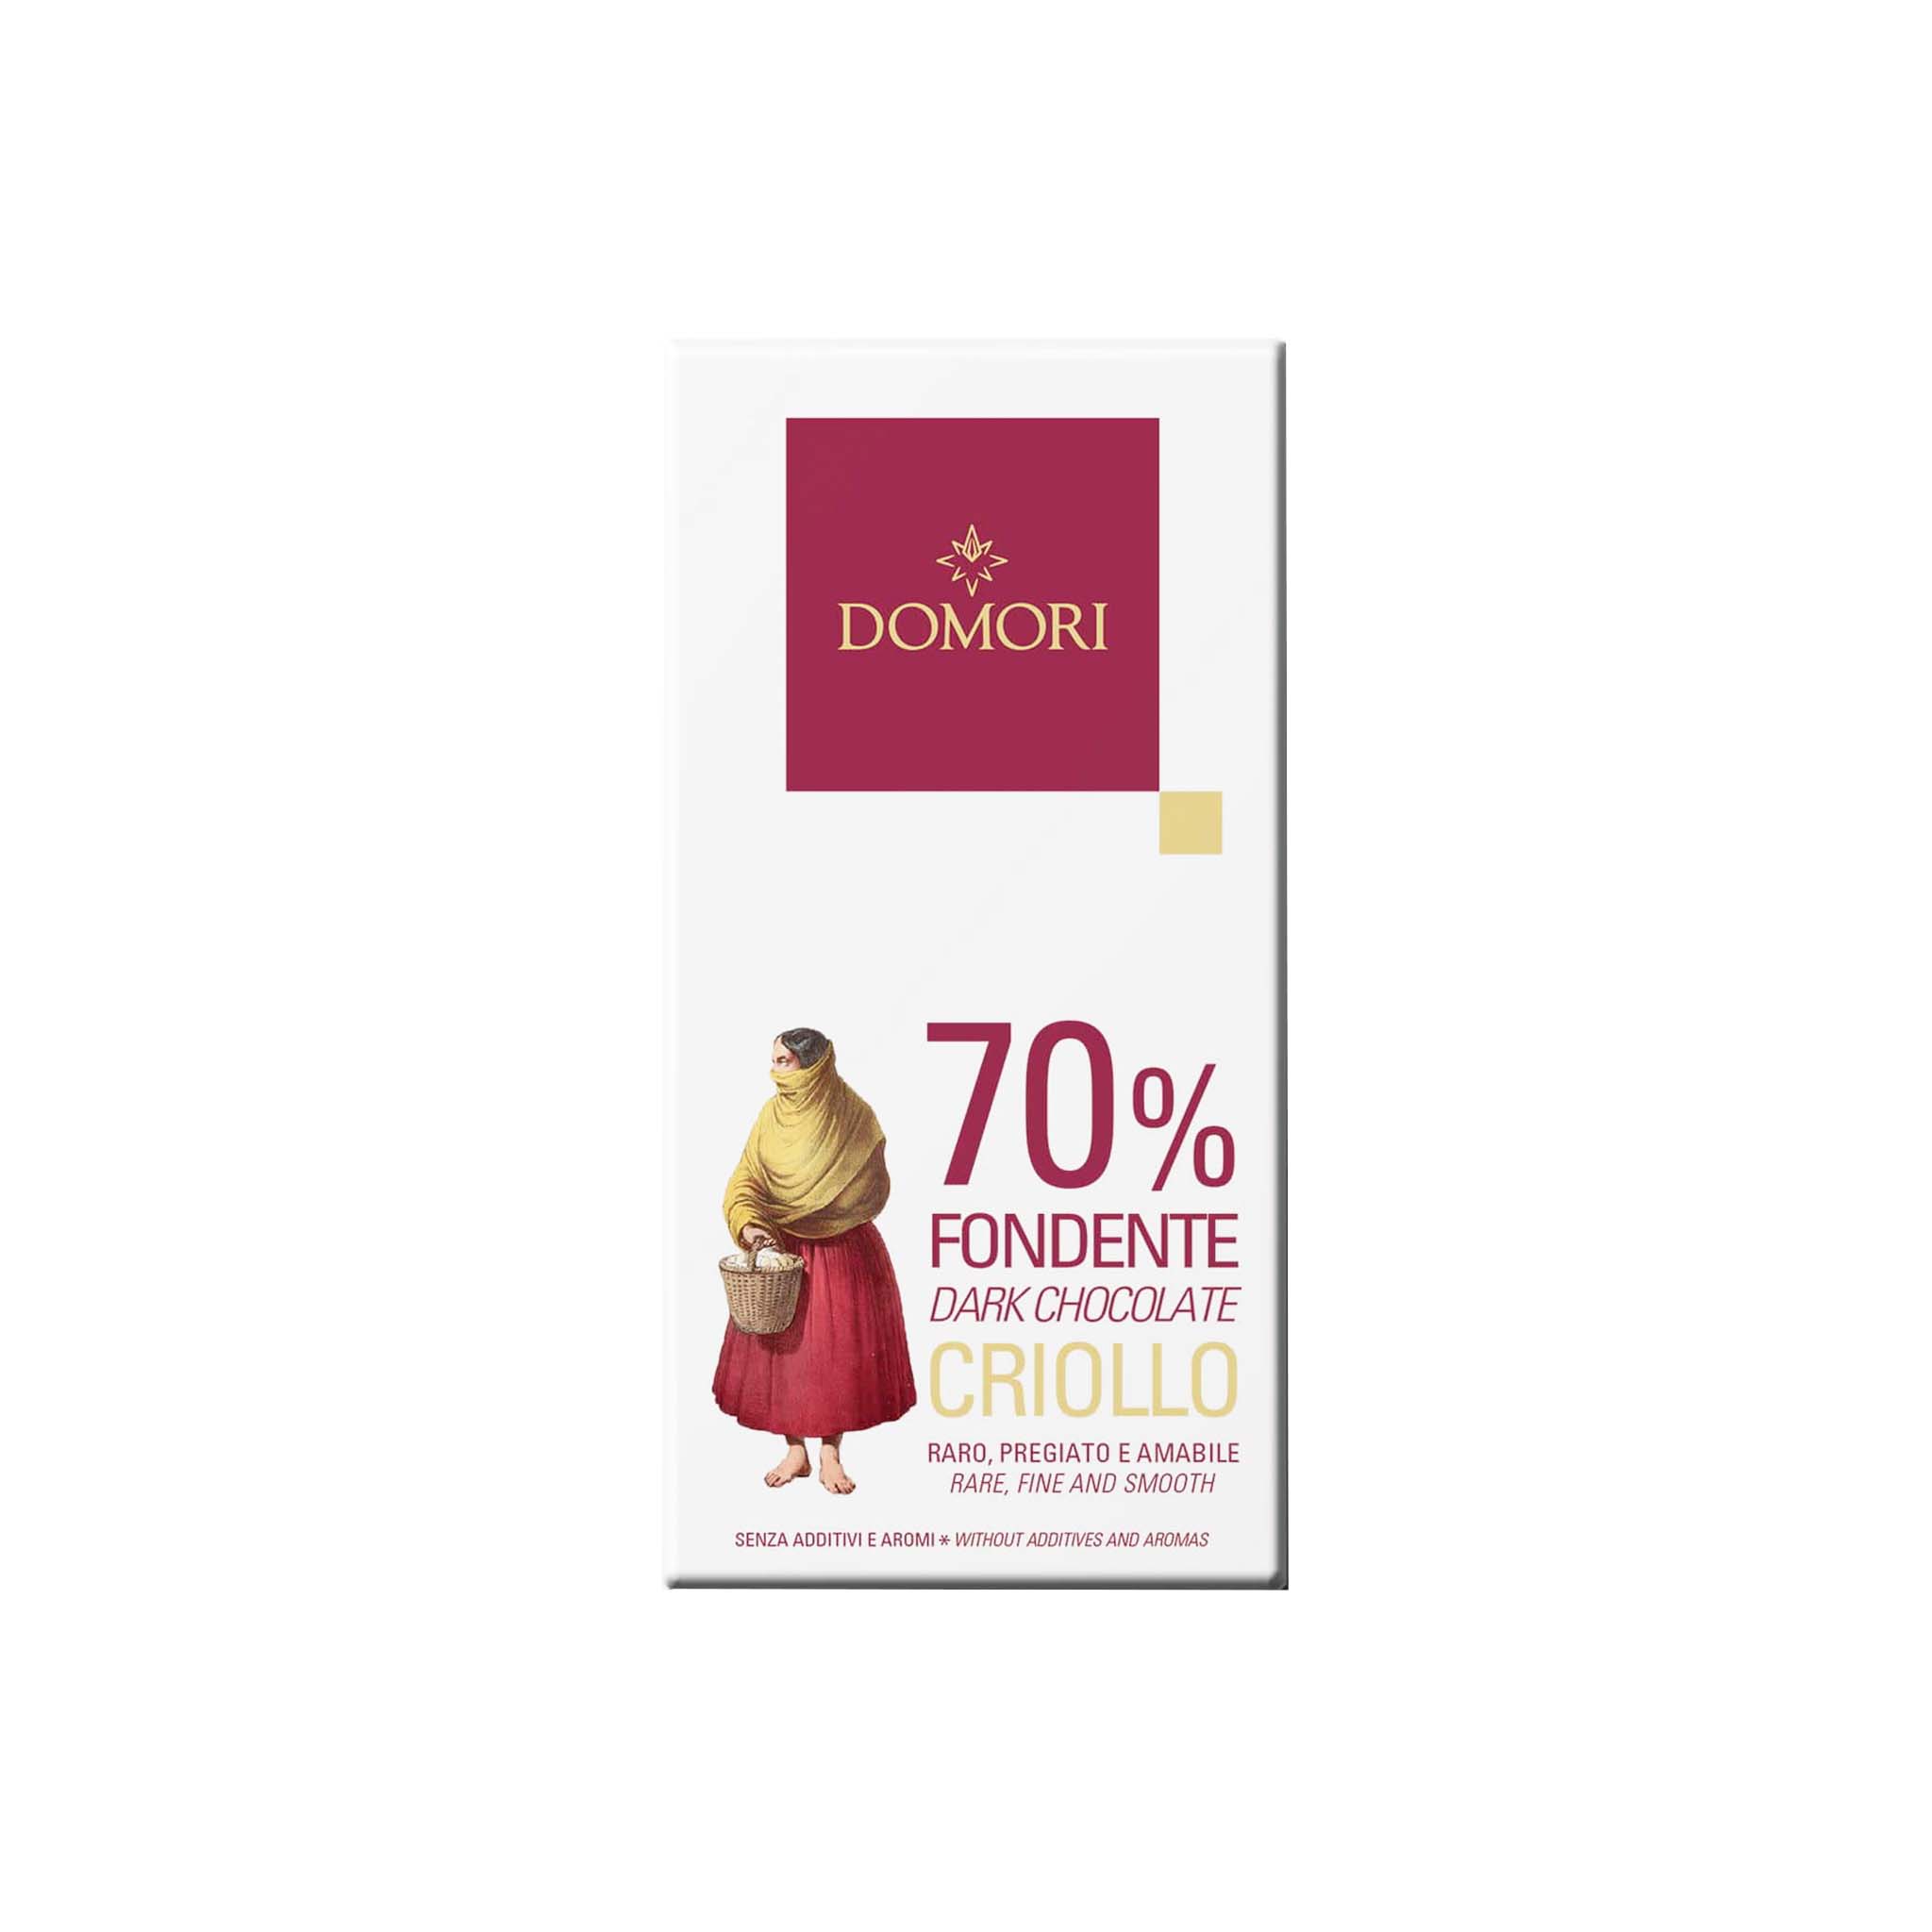 DOMORI FONDENTE  70% DARK CHOCOLATE CRIOLLO 50g